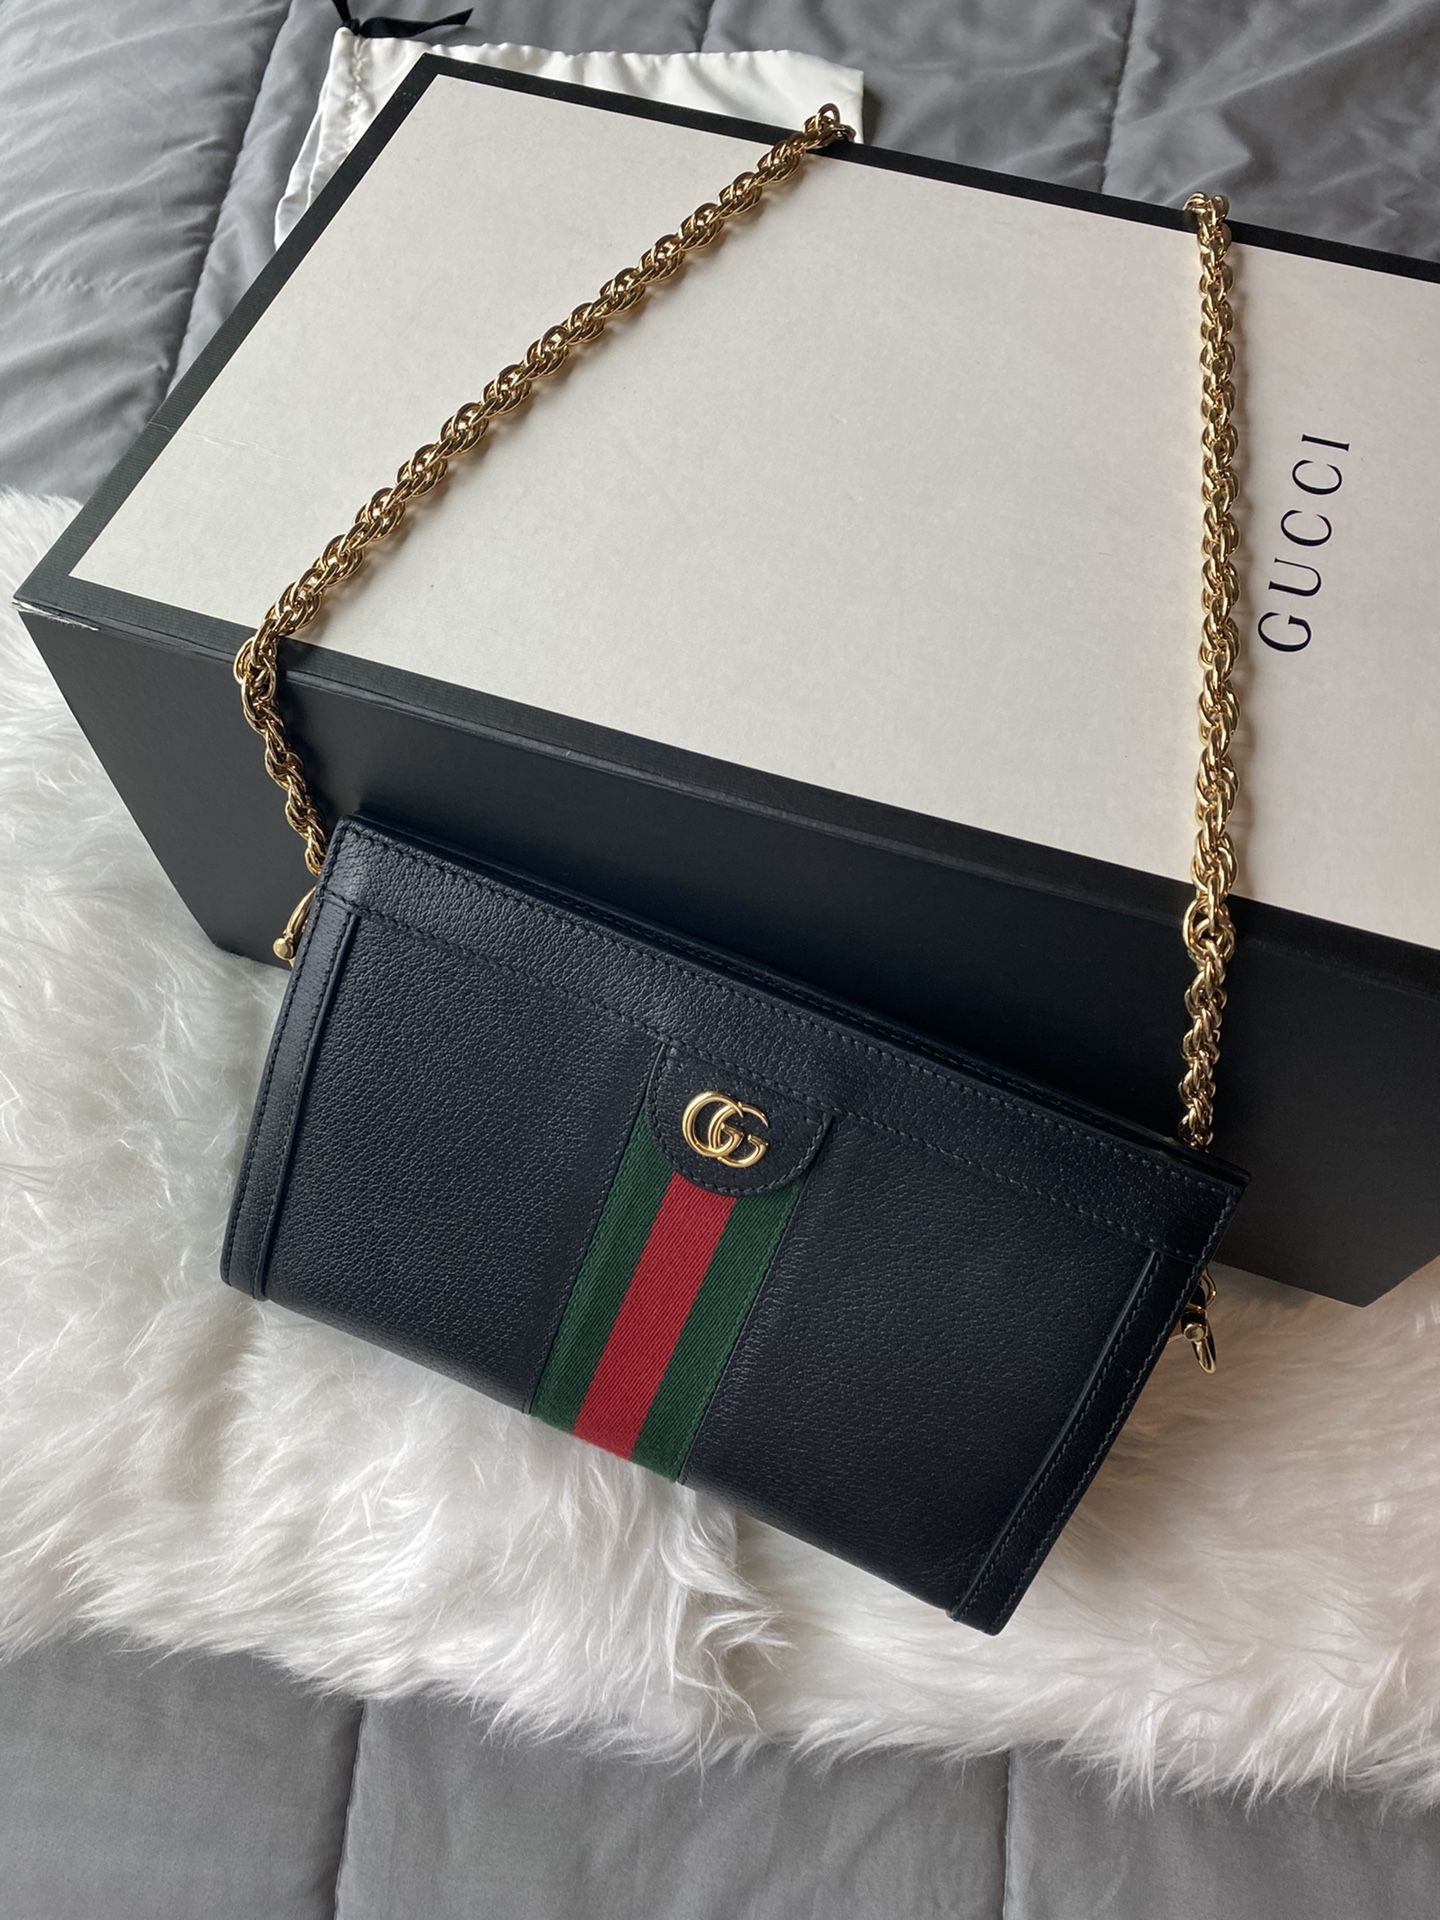 Gucci crossbody handbag